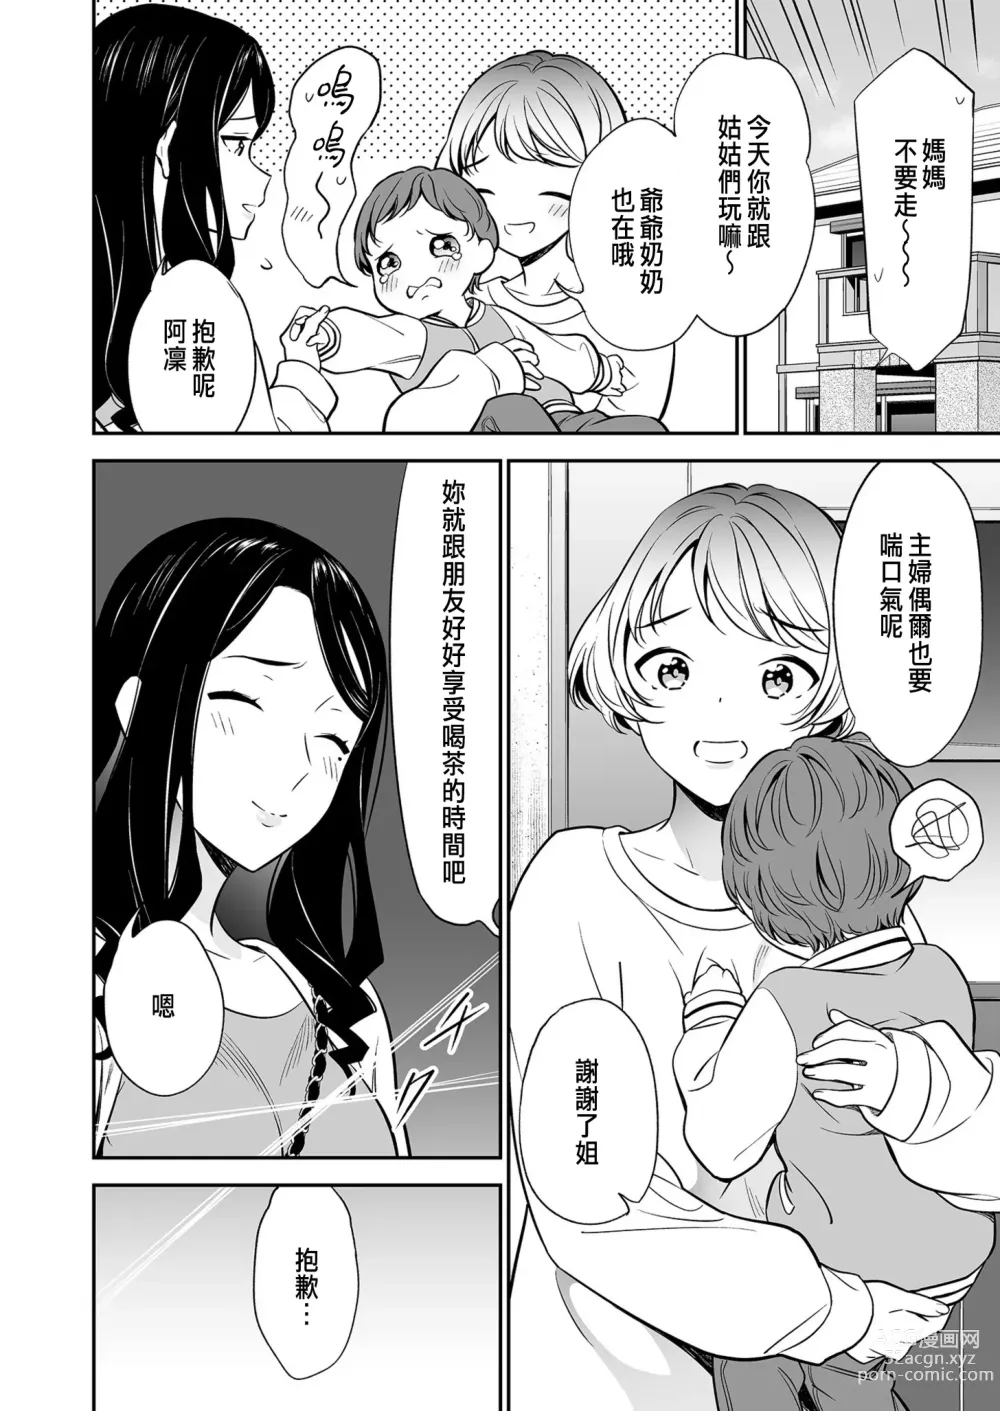 Page 10 of manga Suki nano wa Anata dake... 2